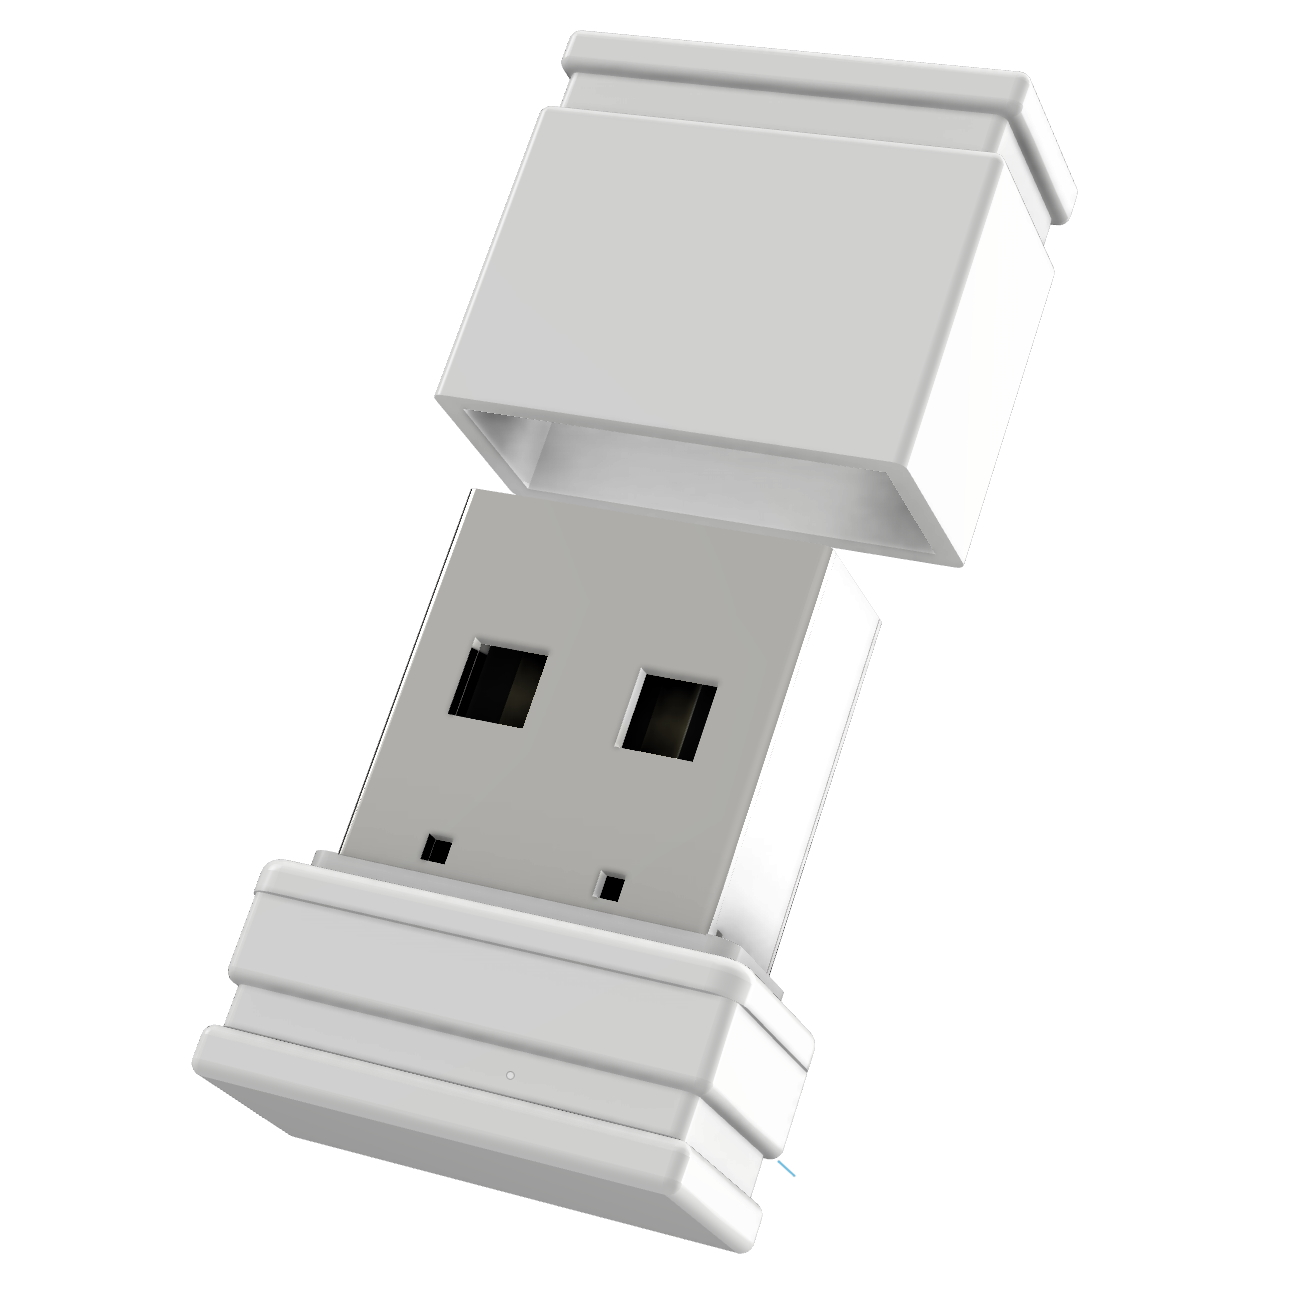 USB GERMANY Mini USB-Stick P1 (Weiß, ®ULTRA GB) 16